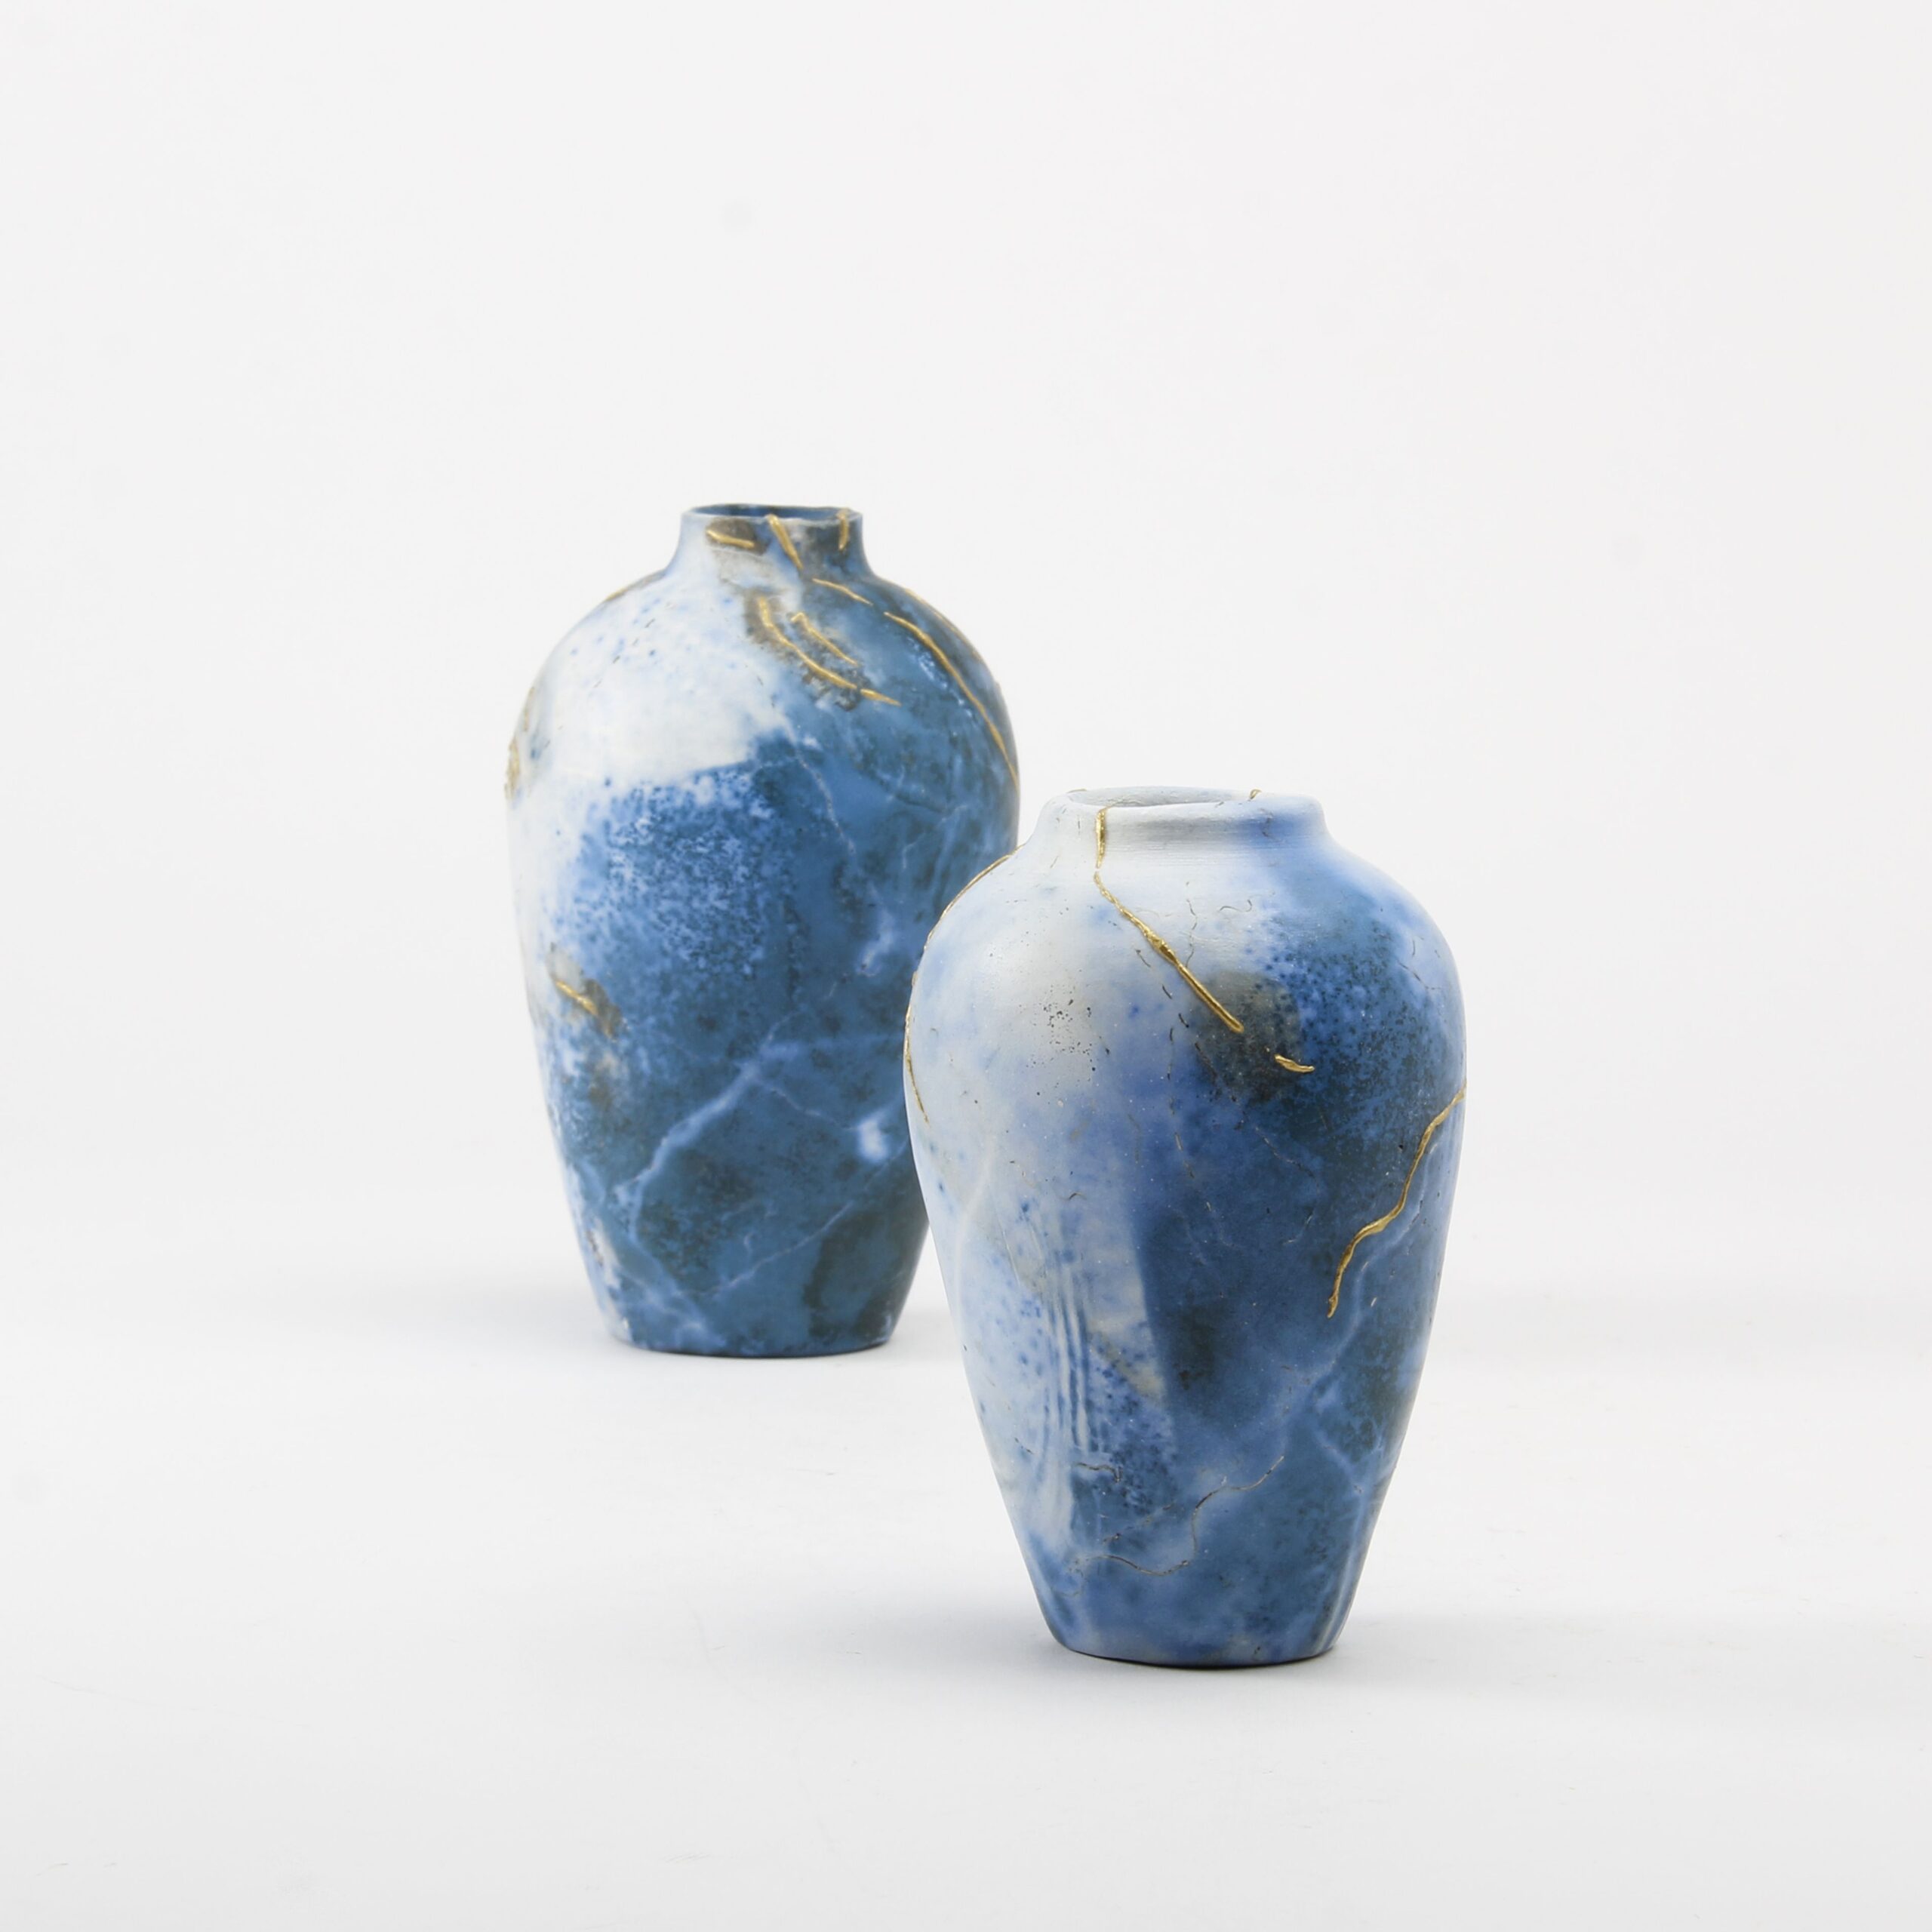 Alison Brannen: Medium Classic Urn Product Image 1 of 6